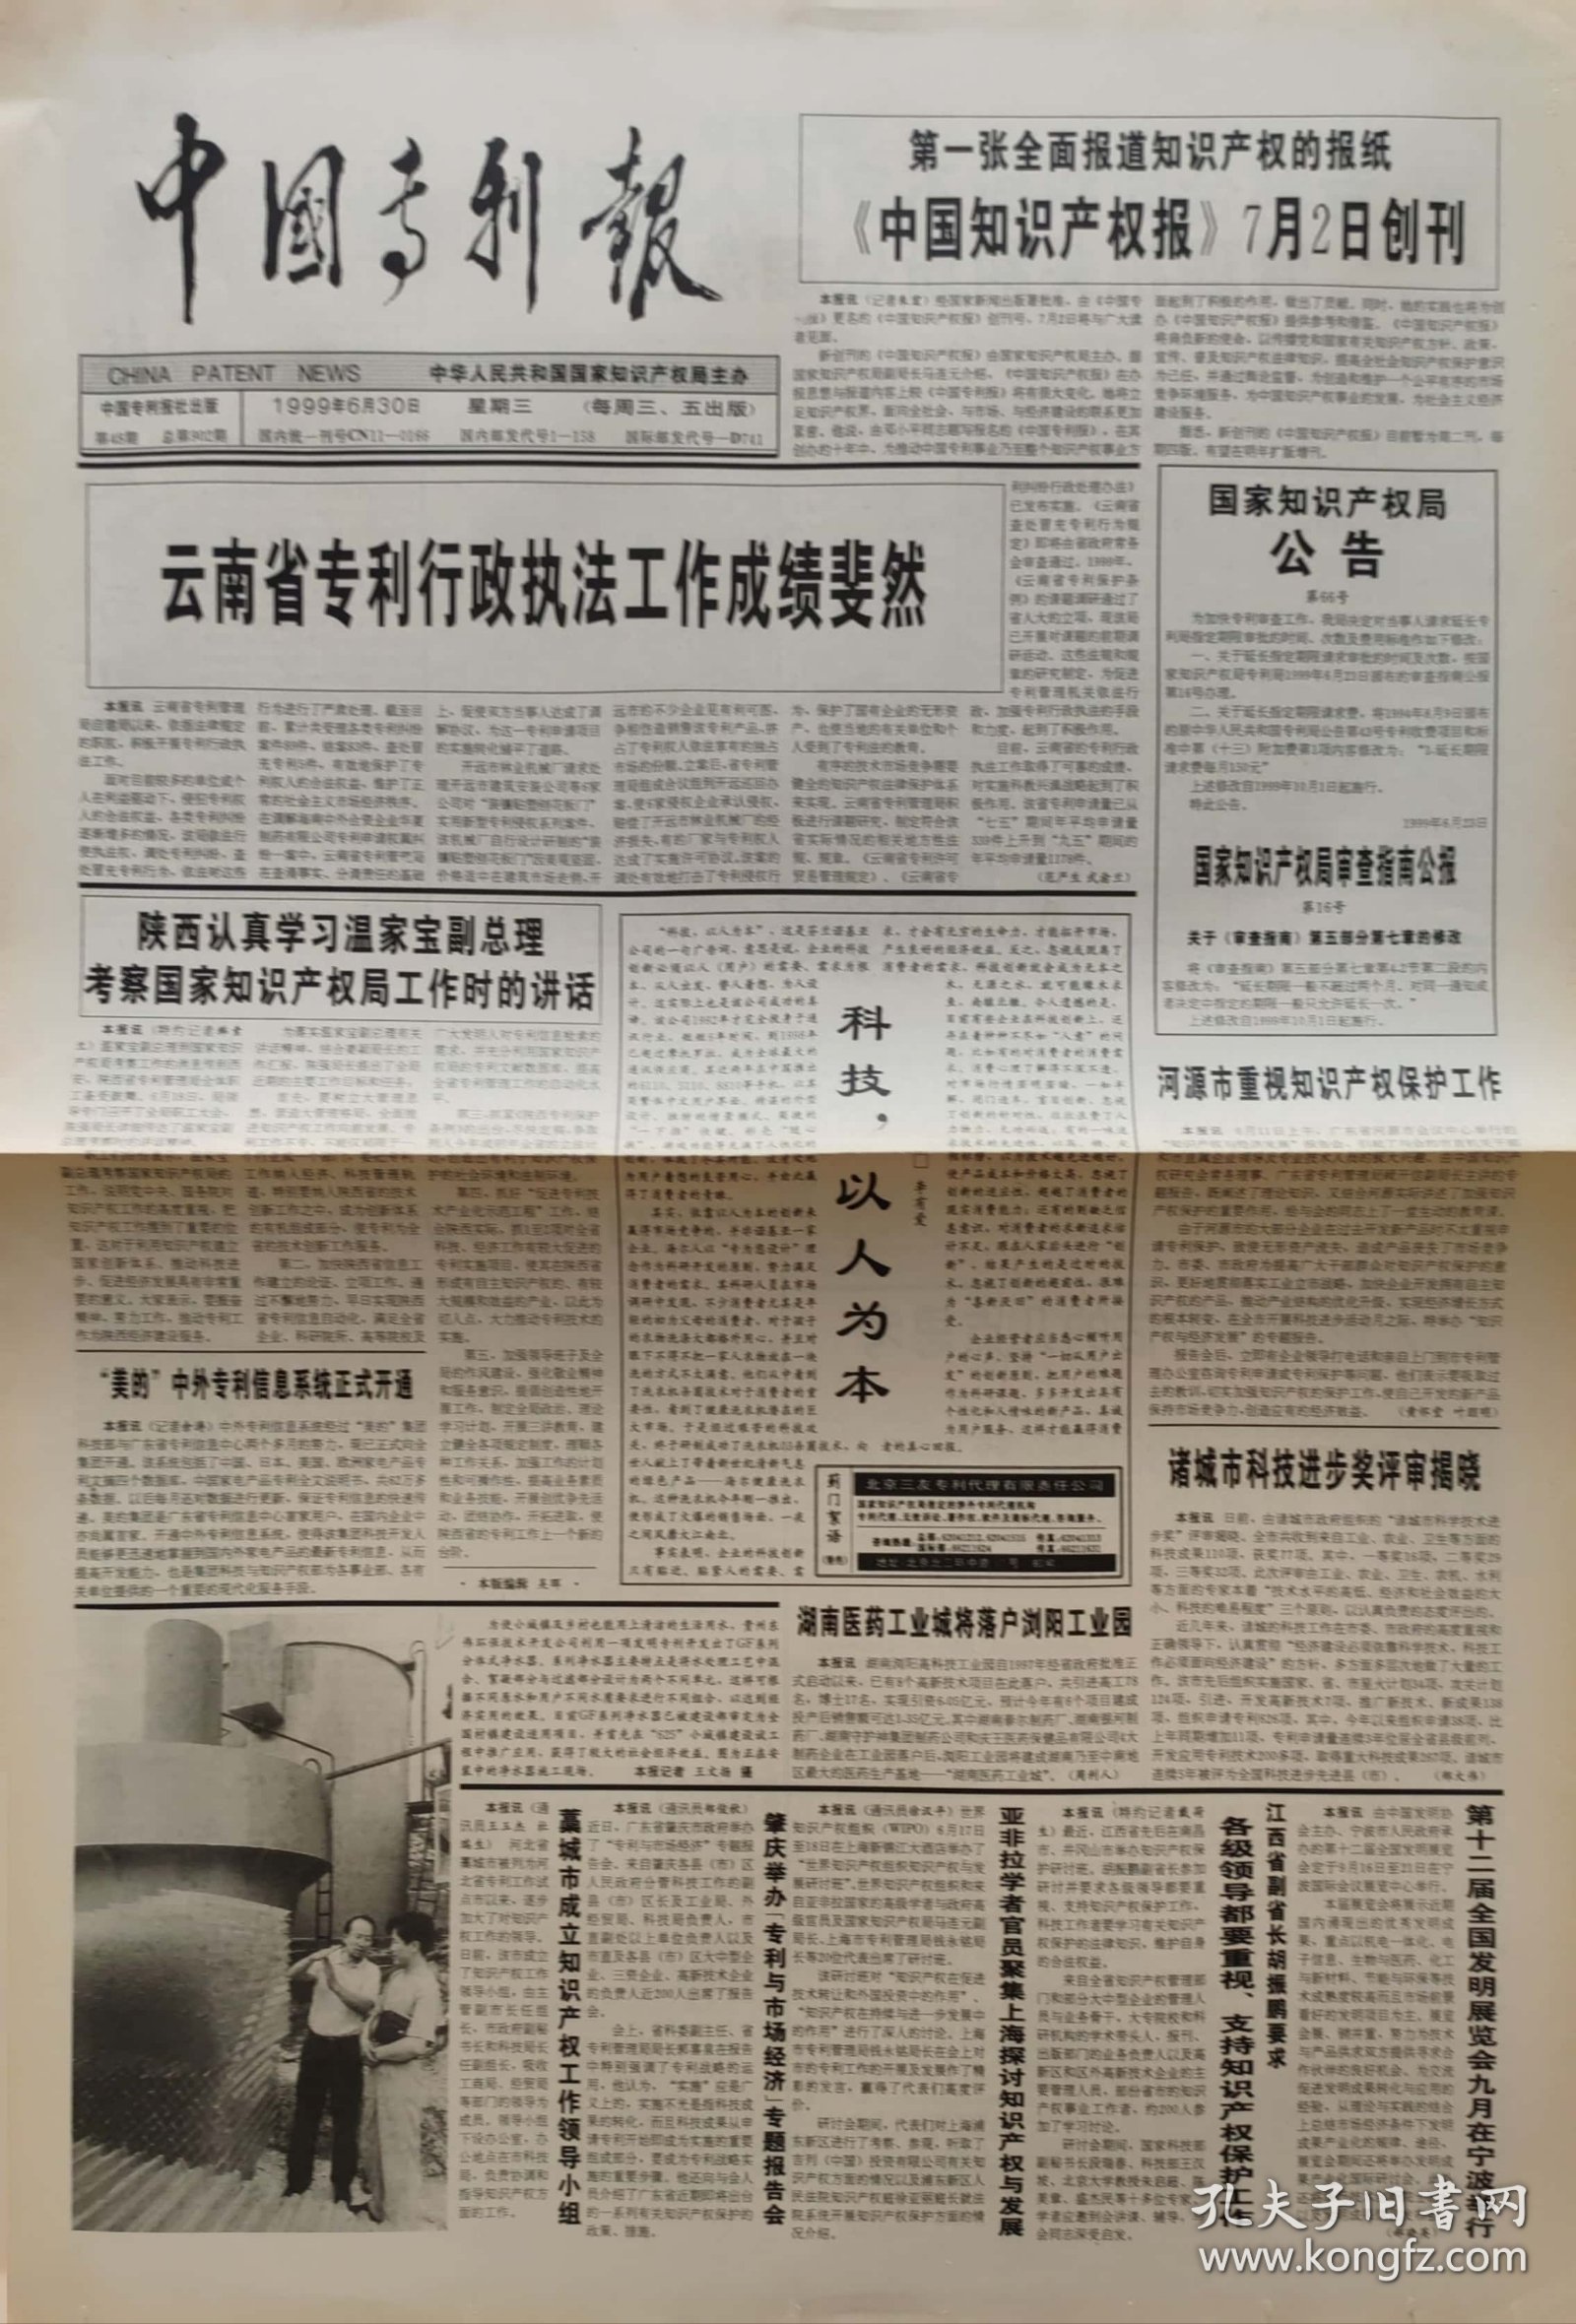 中国专利报 终刊号